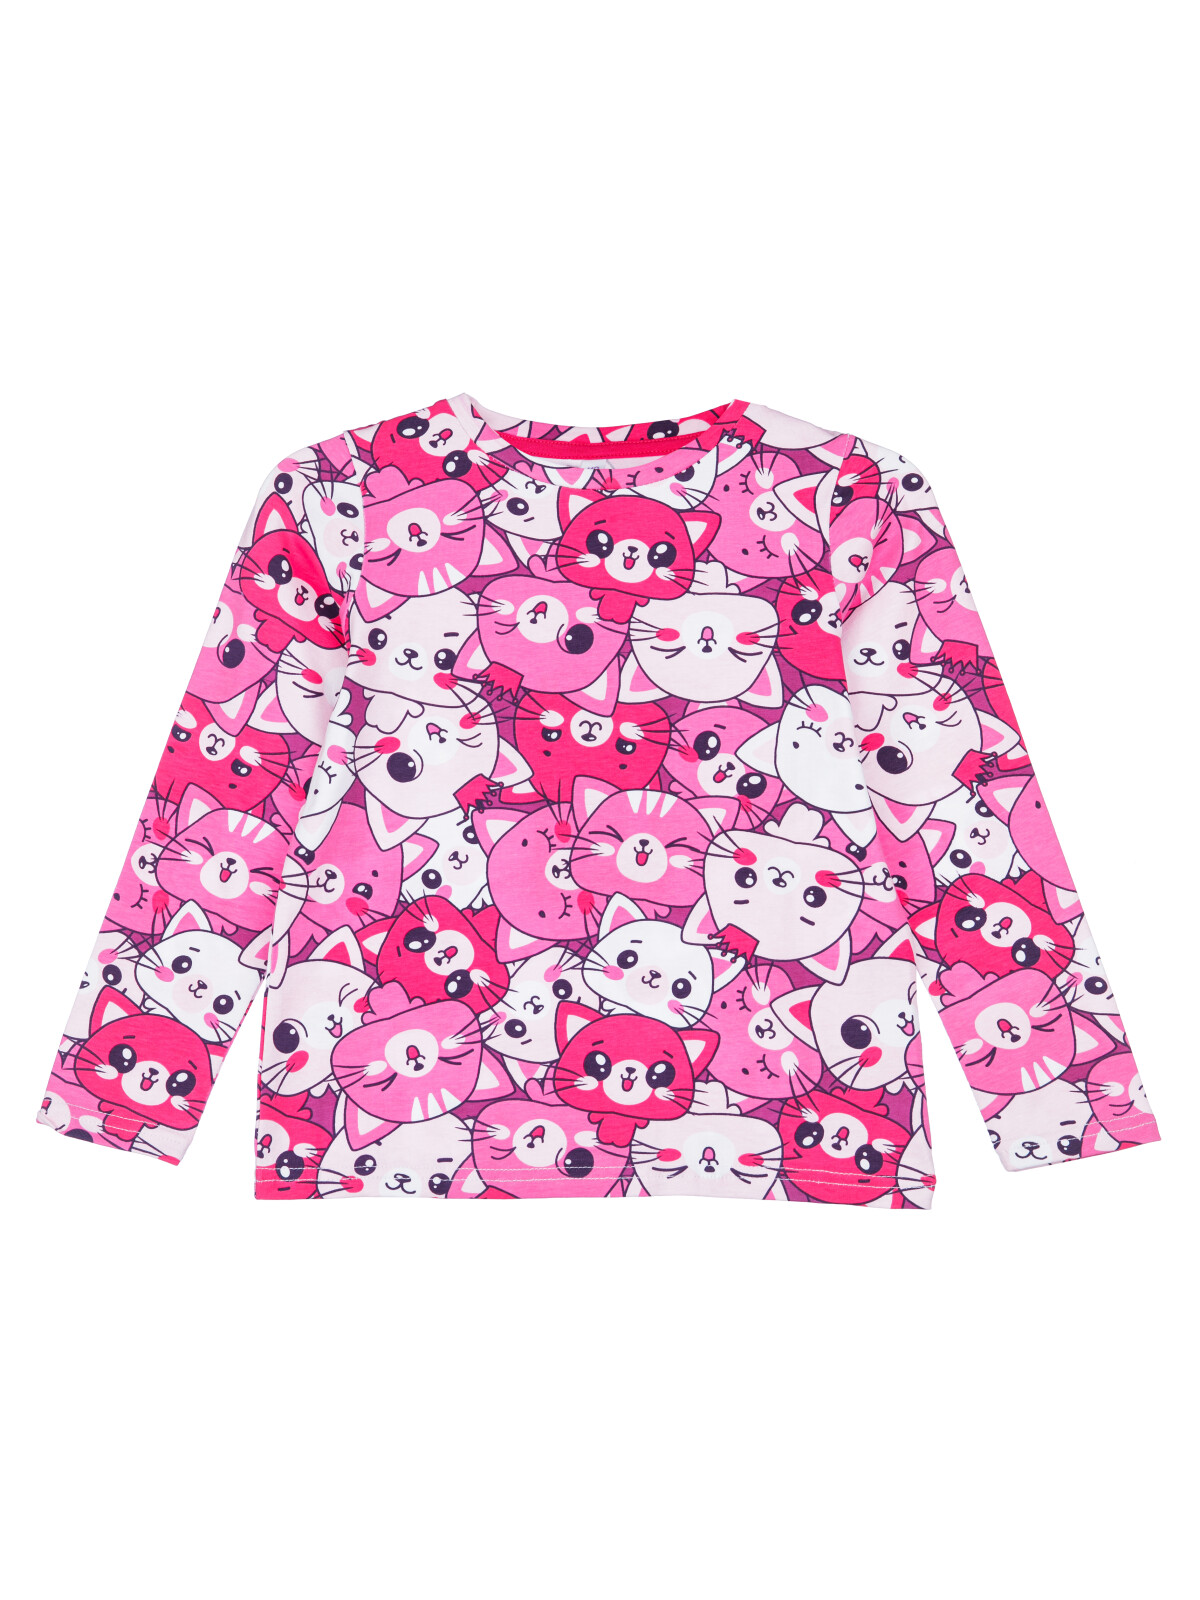 Фуфайка для девочек PlayToday (футболка), розовый,белый, 122